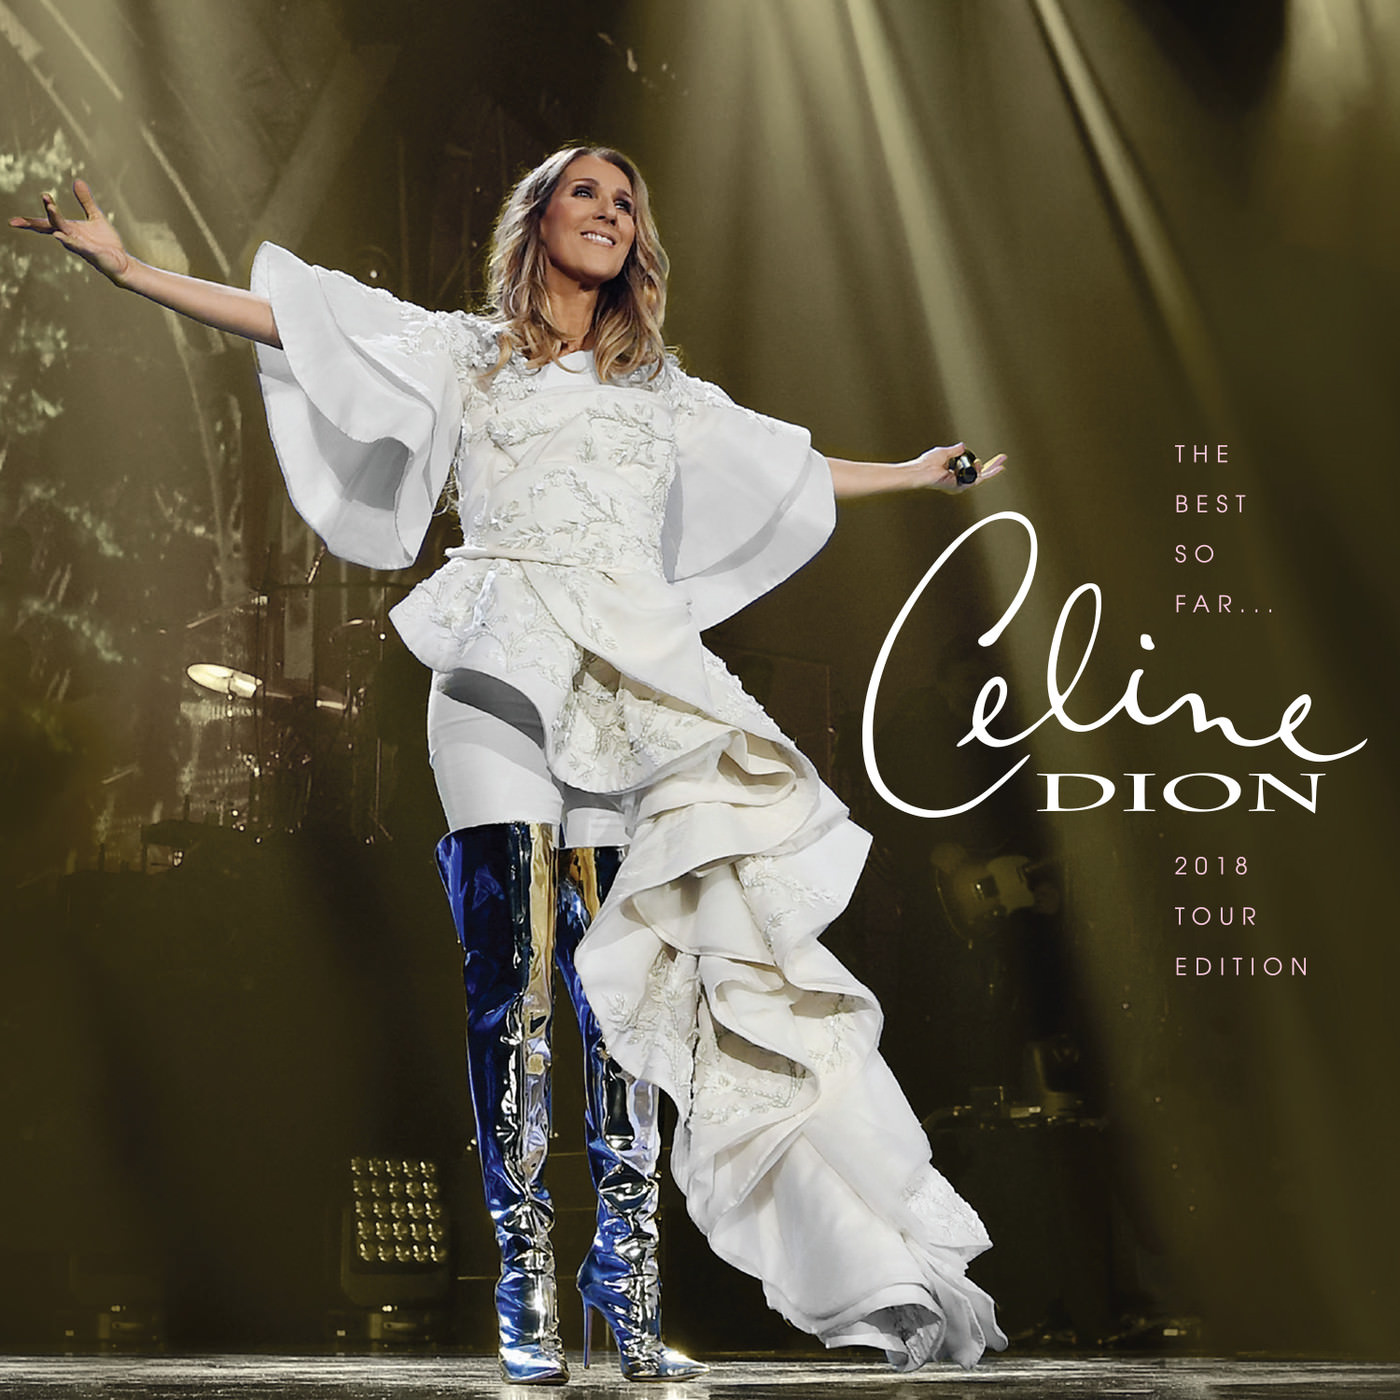 Céline Dion – The Best so Far…2018 Tour Edition (2018) [Official Digital Download 24bit/44,1kHz]